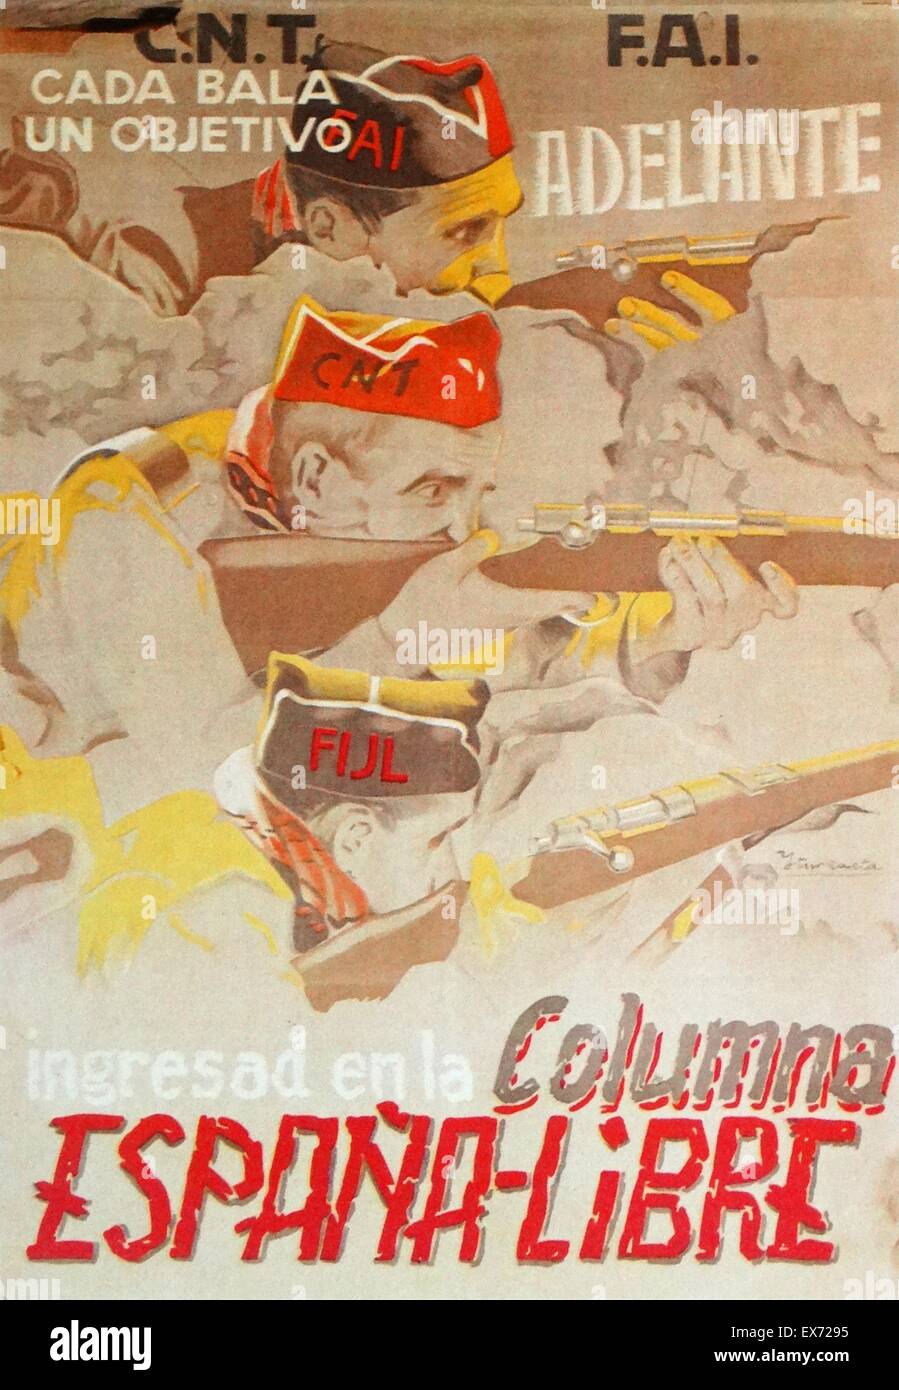 Los anarquistas se unen para apoyar al Gobierno del Frente Popular, propaganda póster que muestra la lucha contra el fascismo durante la Guerra Civil Española Foto de stock